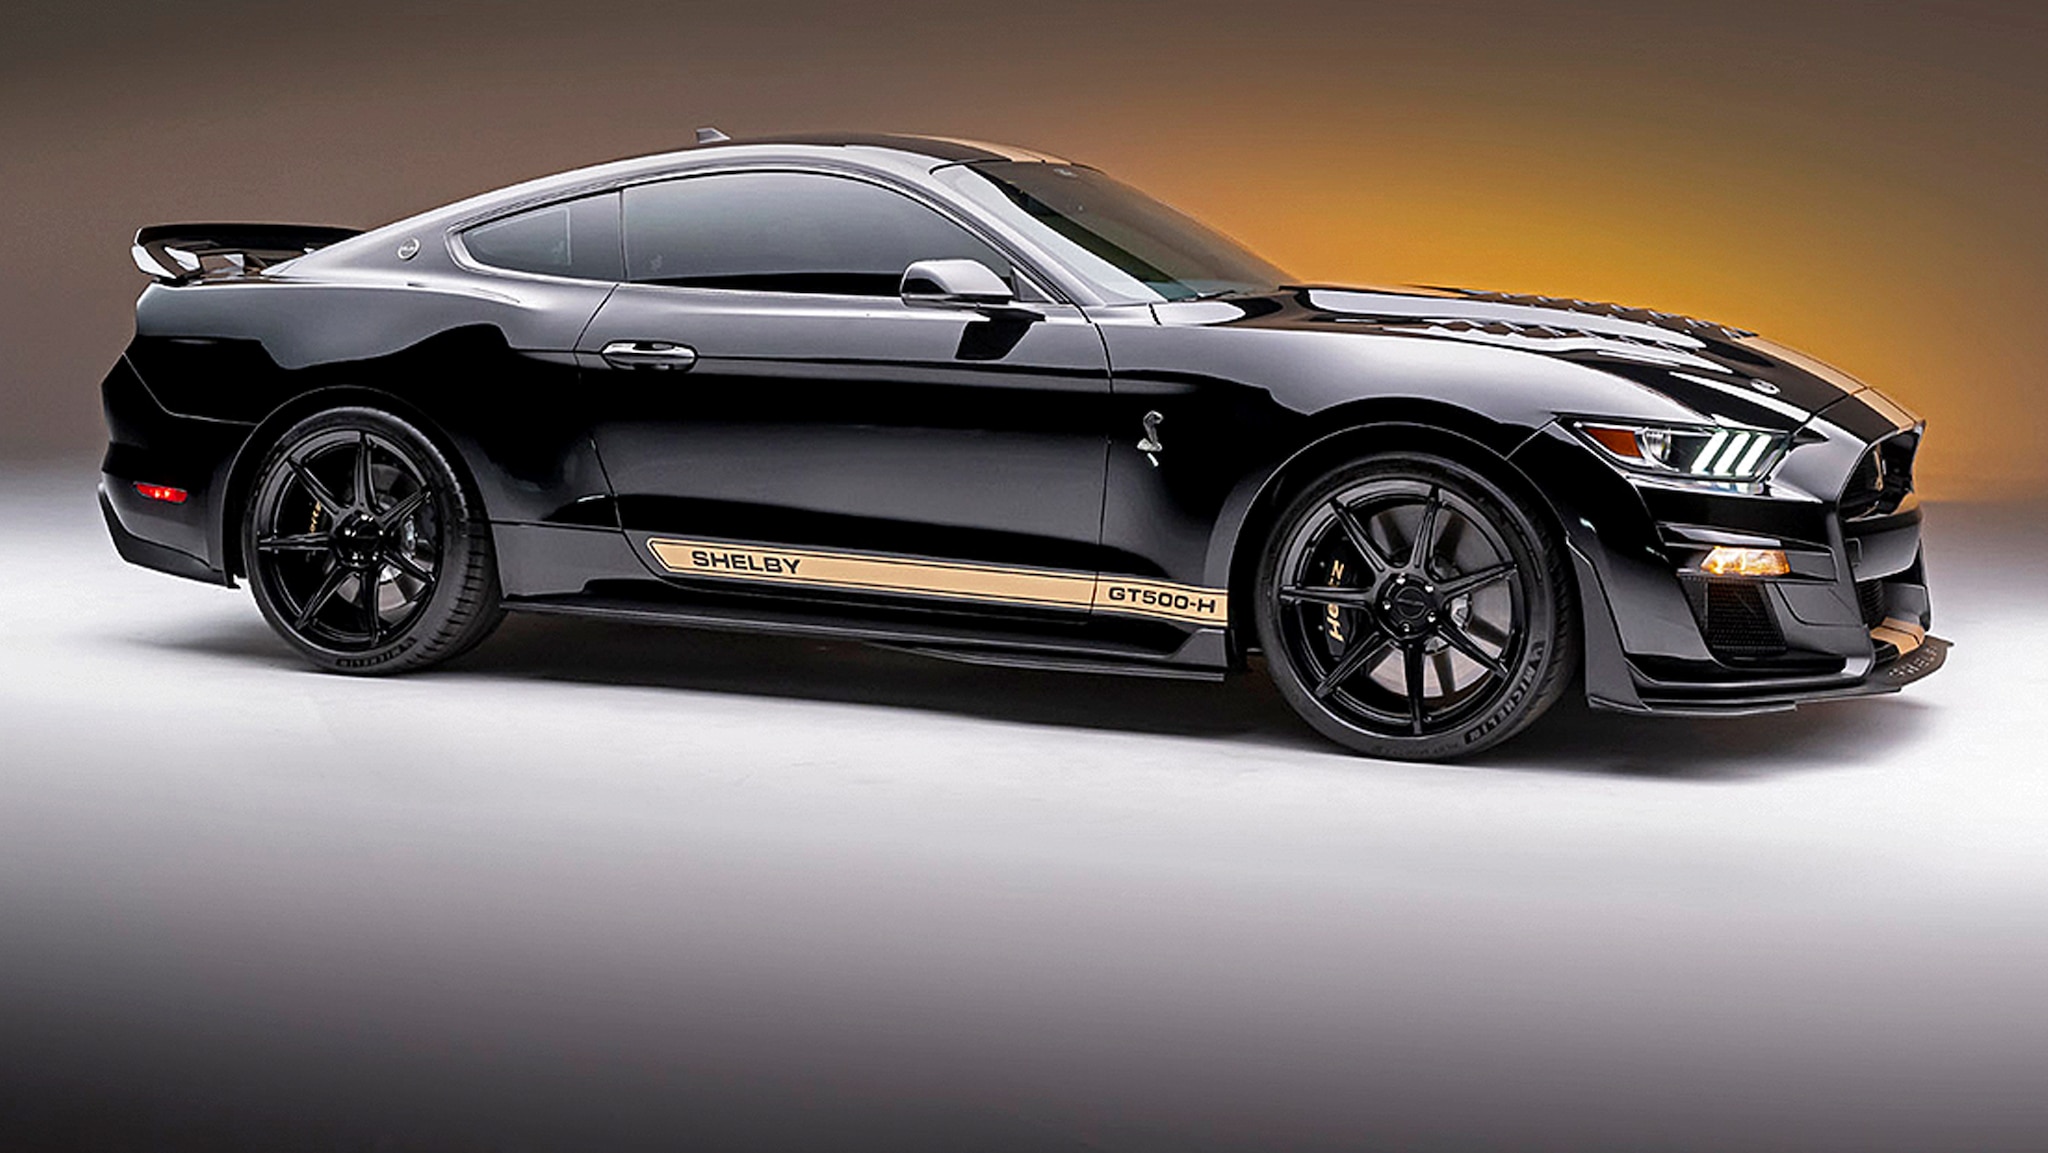 Shelby GT500-H: Mustang mit über 900 PS für 385 Euro mieten